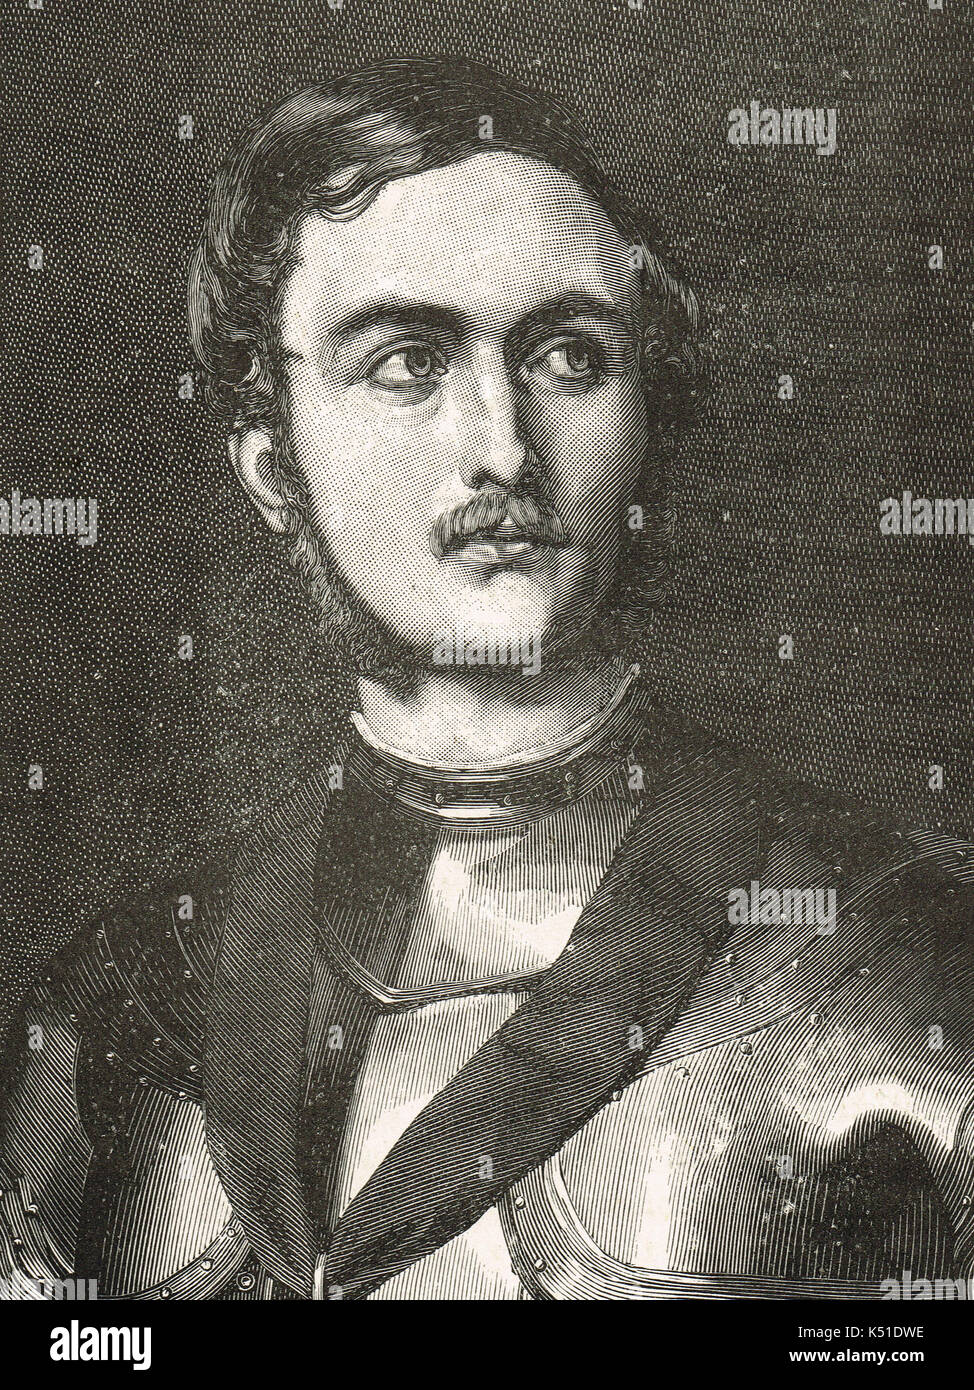 Prince Albert comme un chevalier en armure, 1844 Banque D'Images